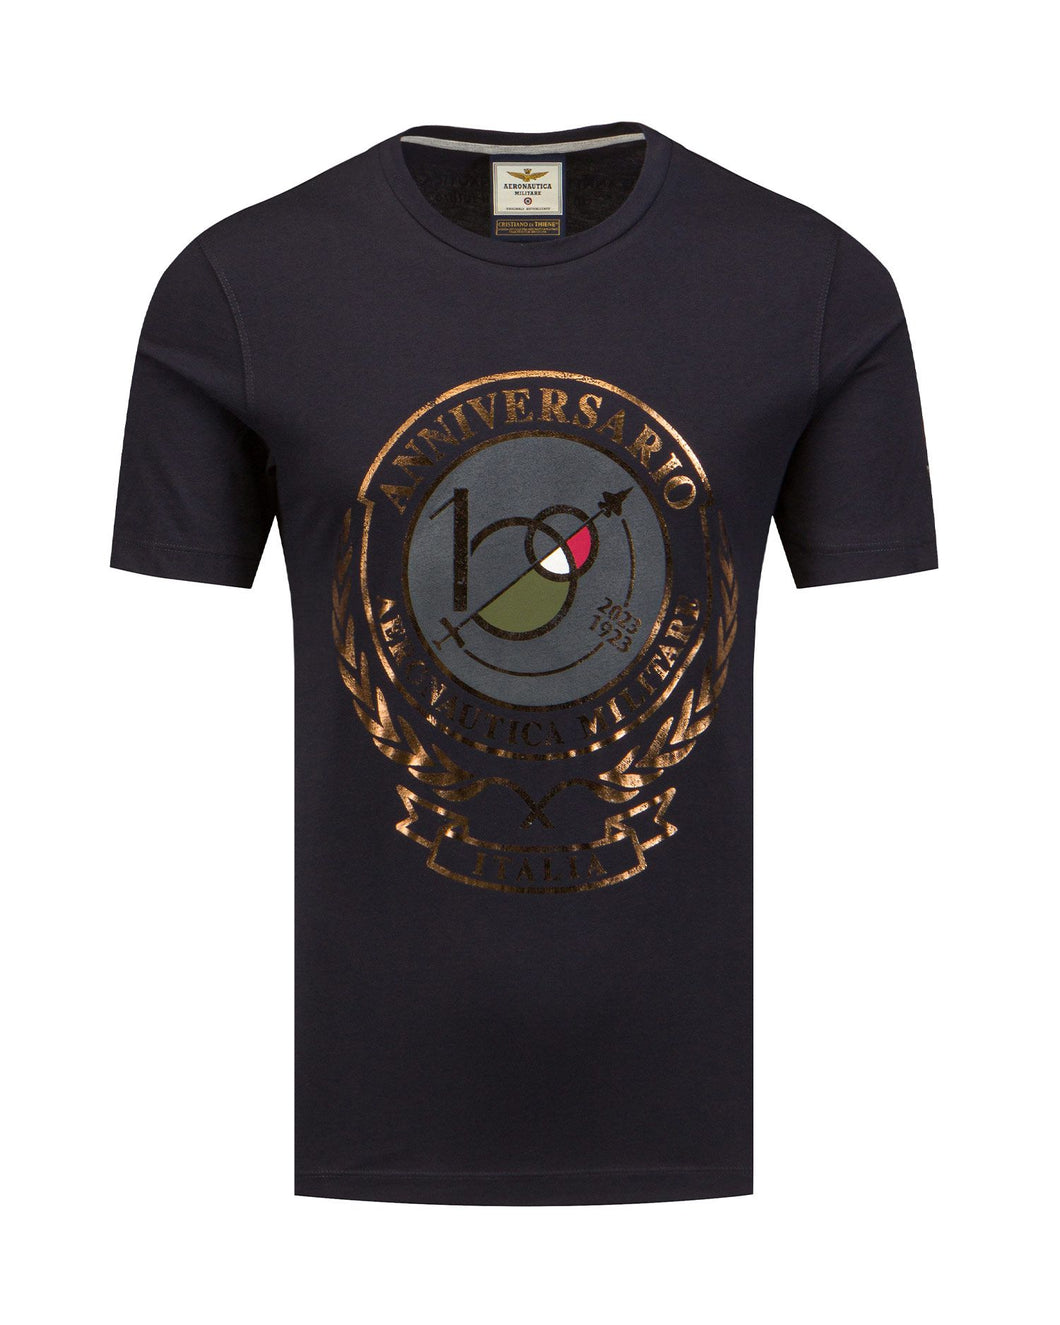 Aeronautica Militare t-shirt centenario maglia Uomo Blu SC-50% manica corta